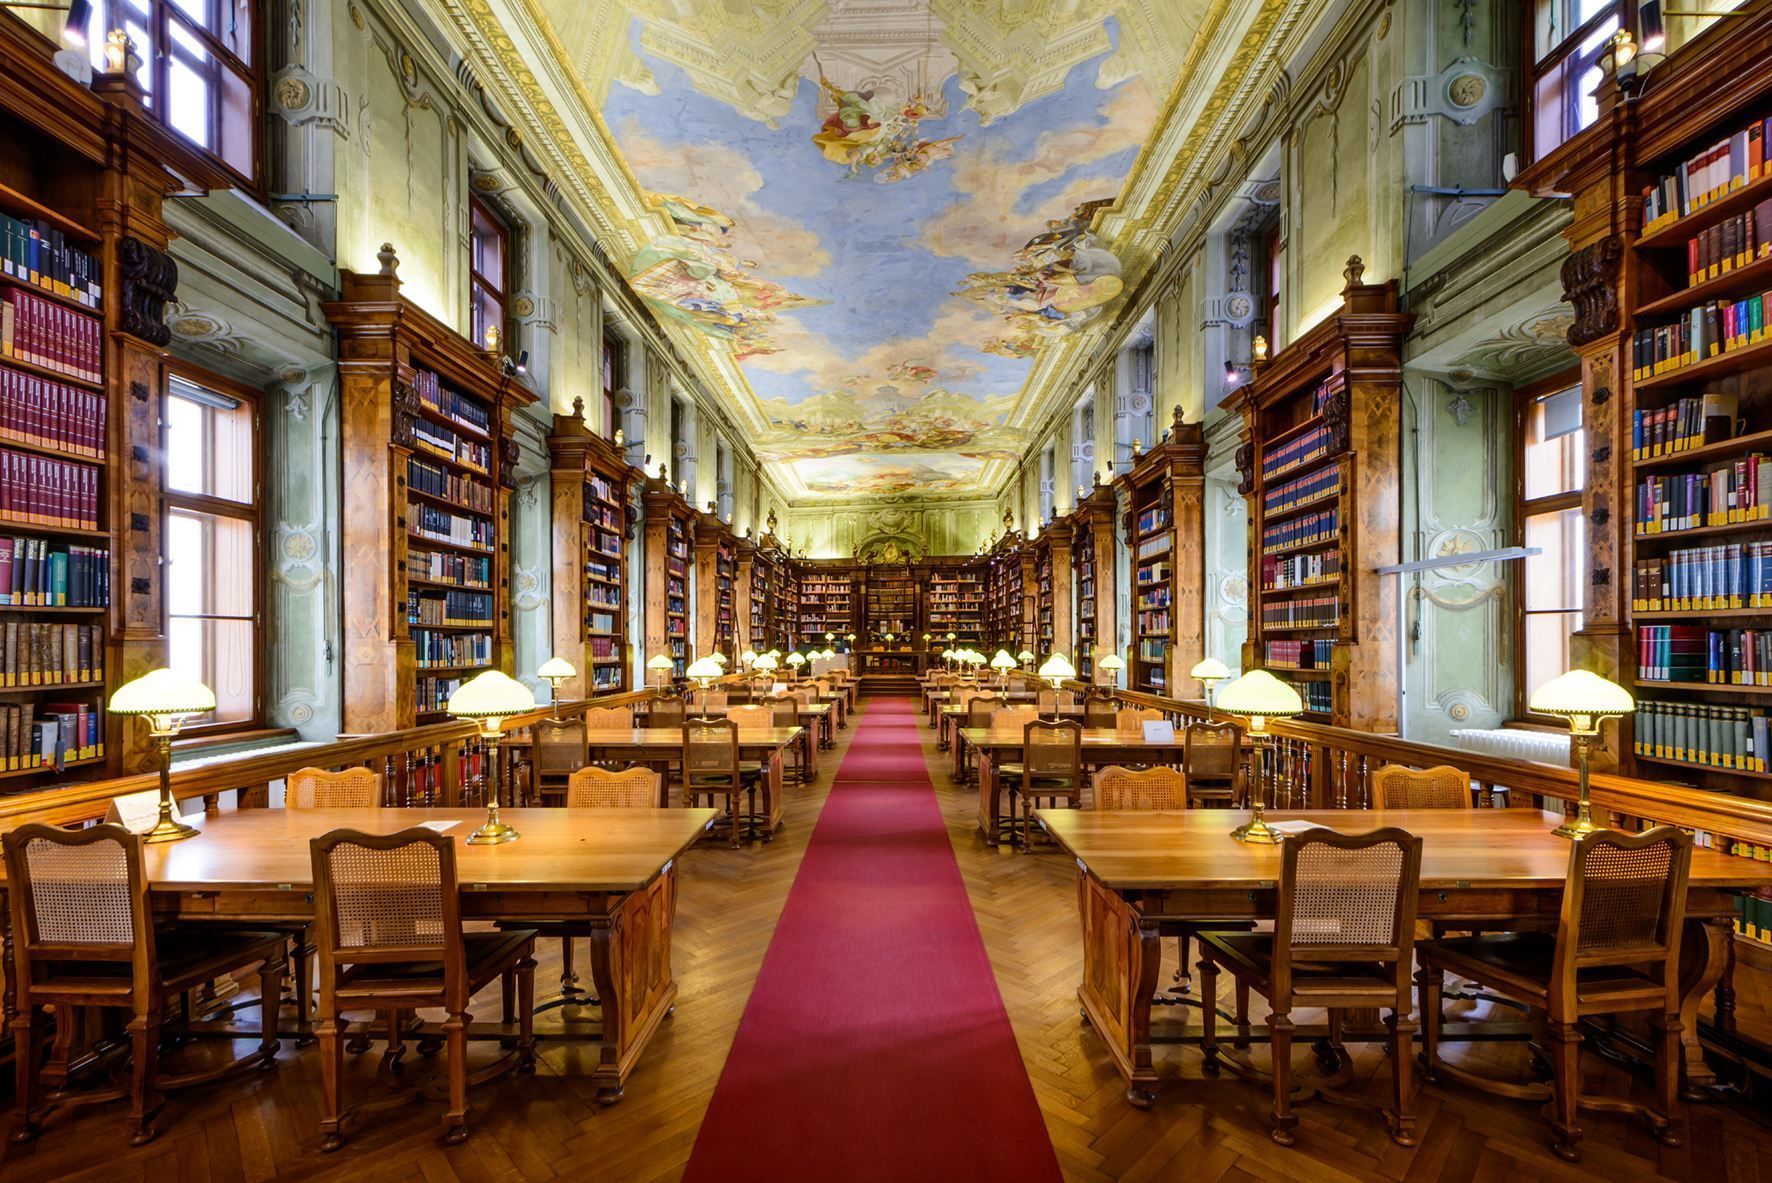 作为必去之处,我将向所有在维也纳的人推荐这里如此特别的图书馆